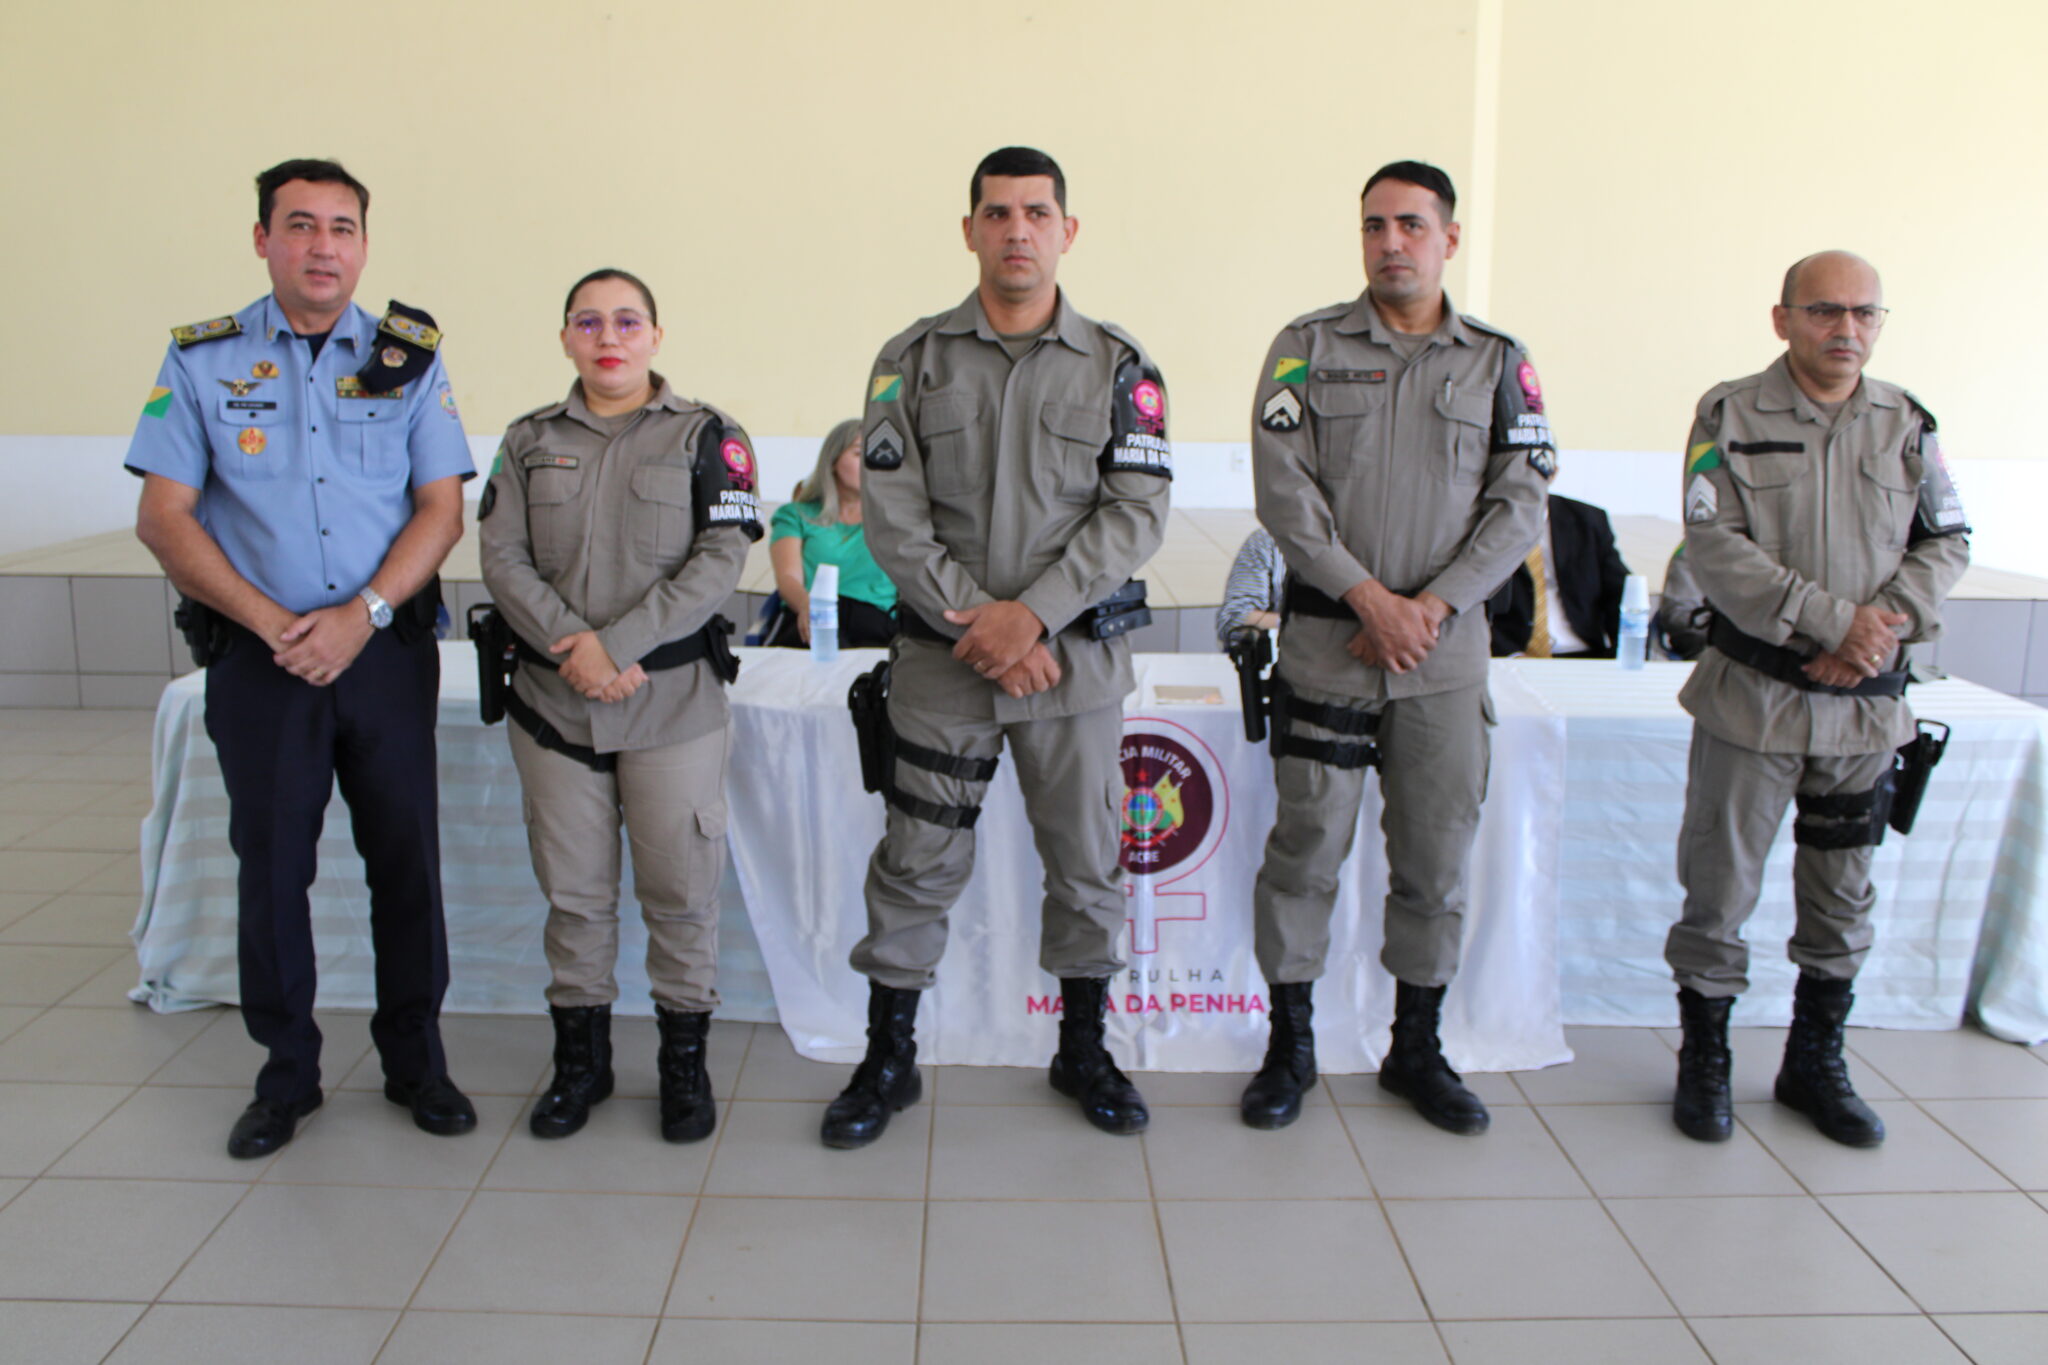 Polícia Militar do Acre lança Patrulha Maria da Penha em Senador Guiomard